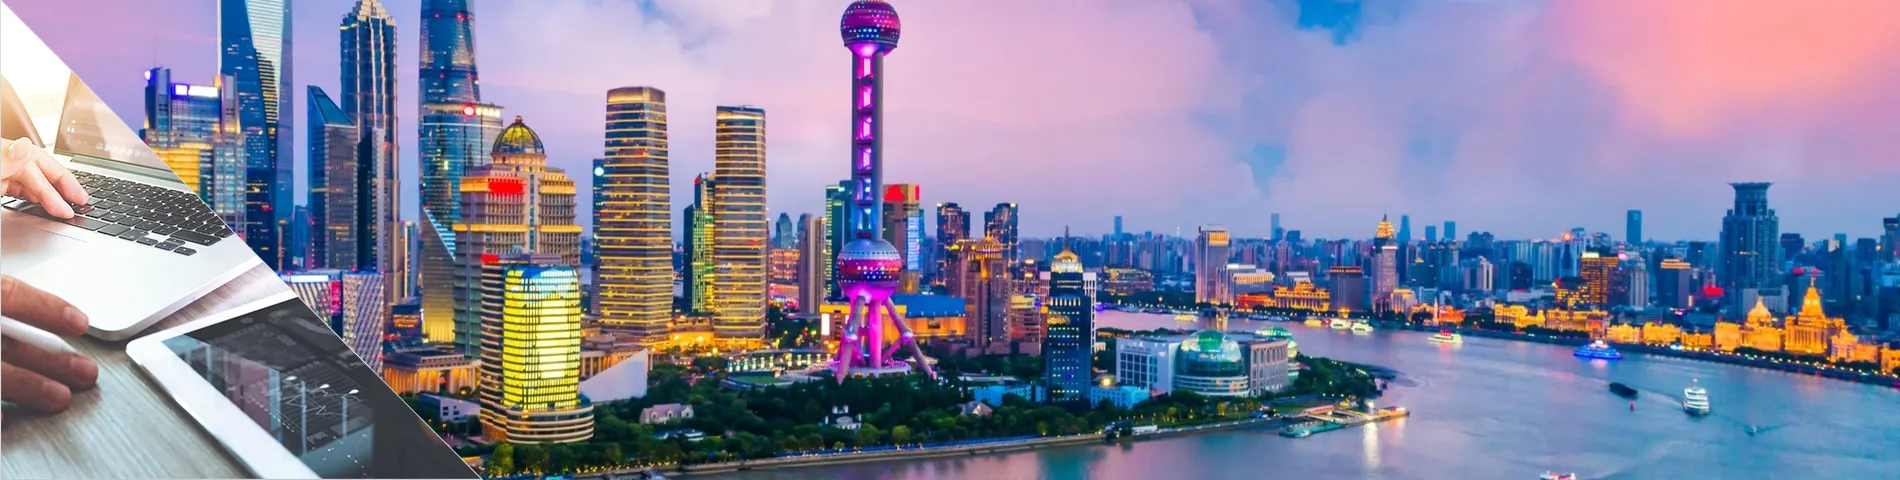 上海 - 汉语和数字媒体